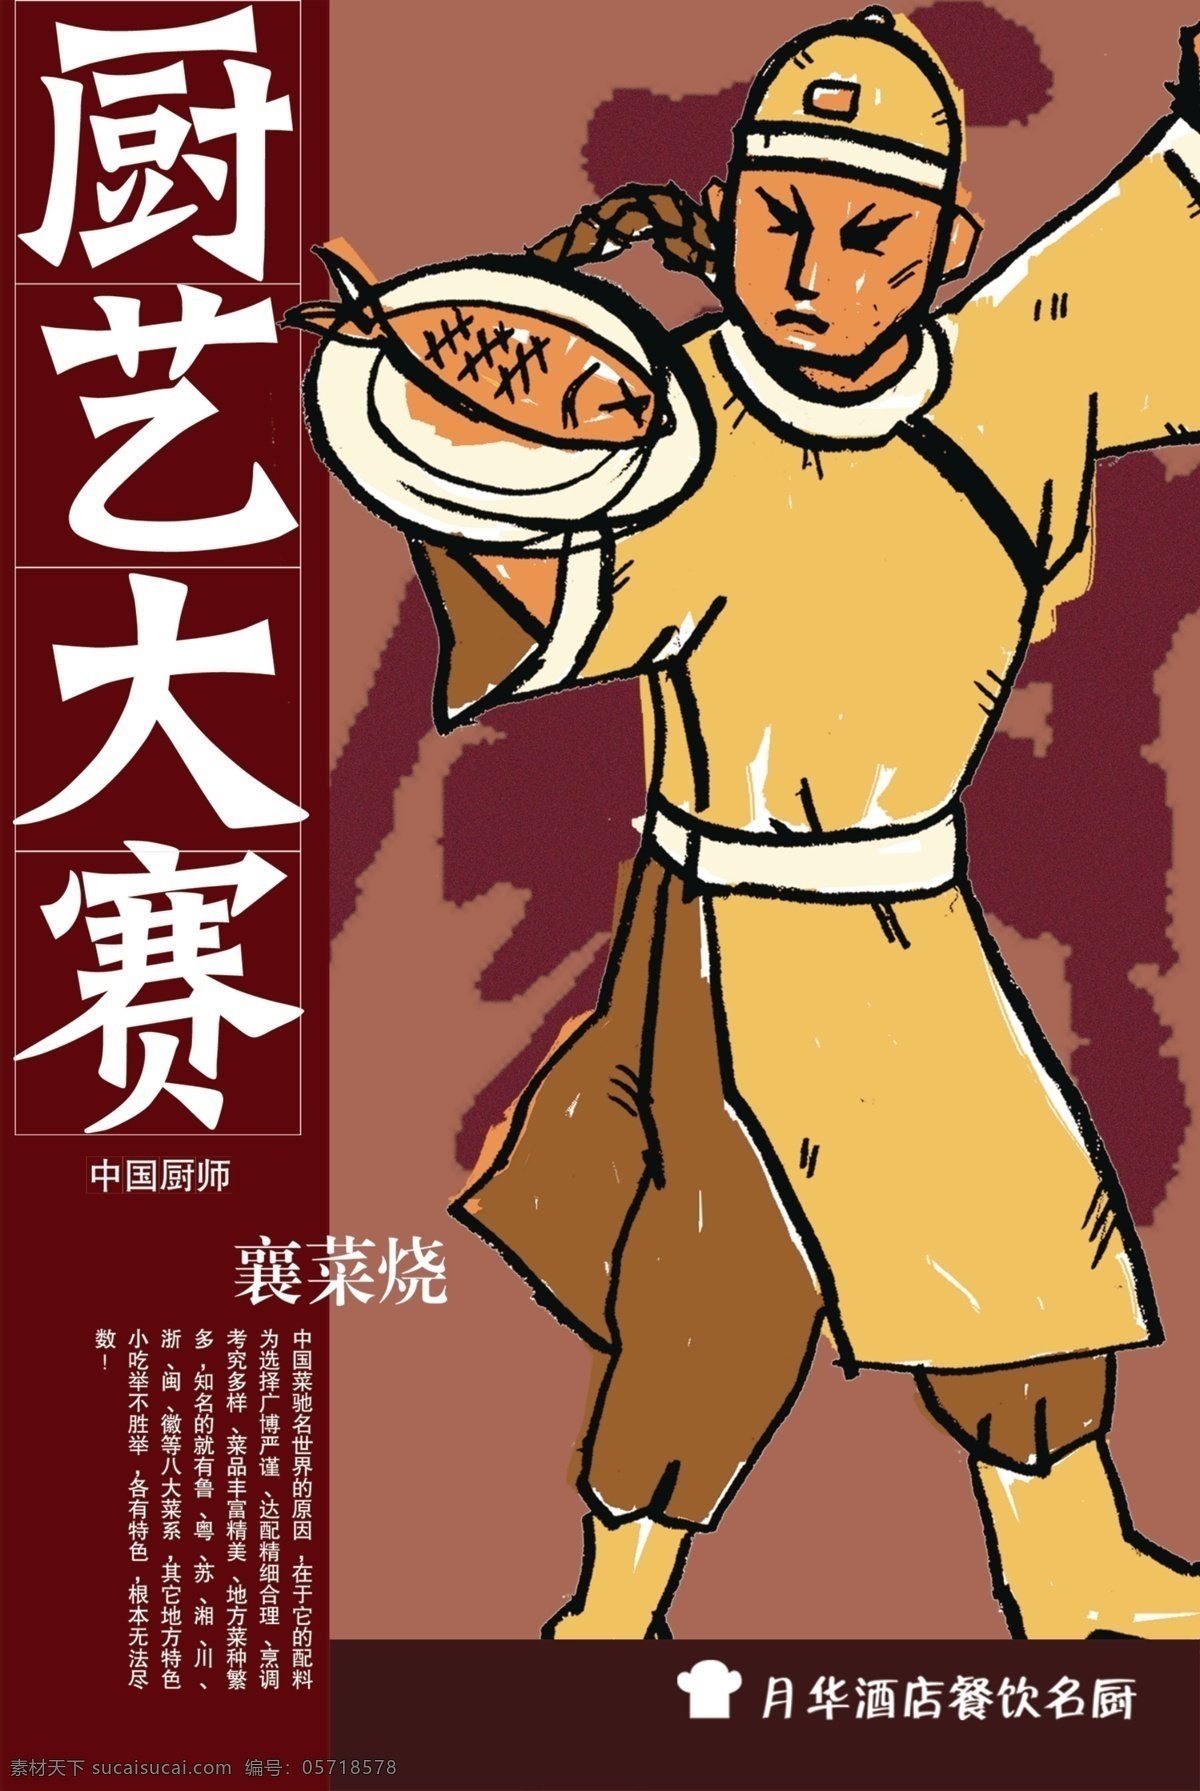 厨艺大赛 插画 中国风 鱼 店小二 厨艺 海报 平面共享 招贴设计 黑色